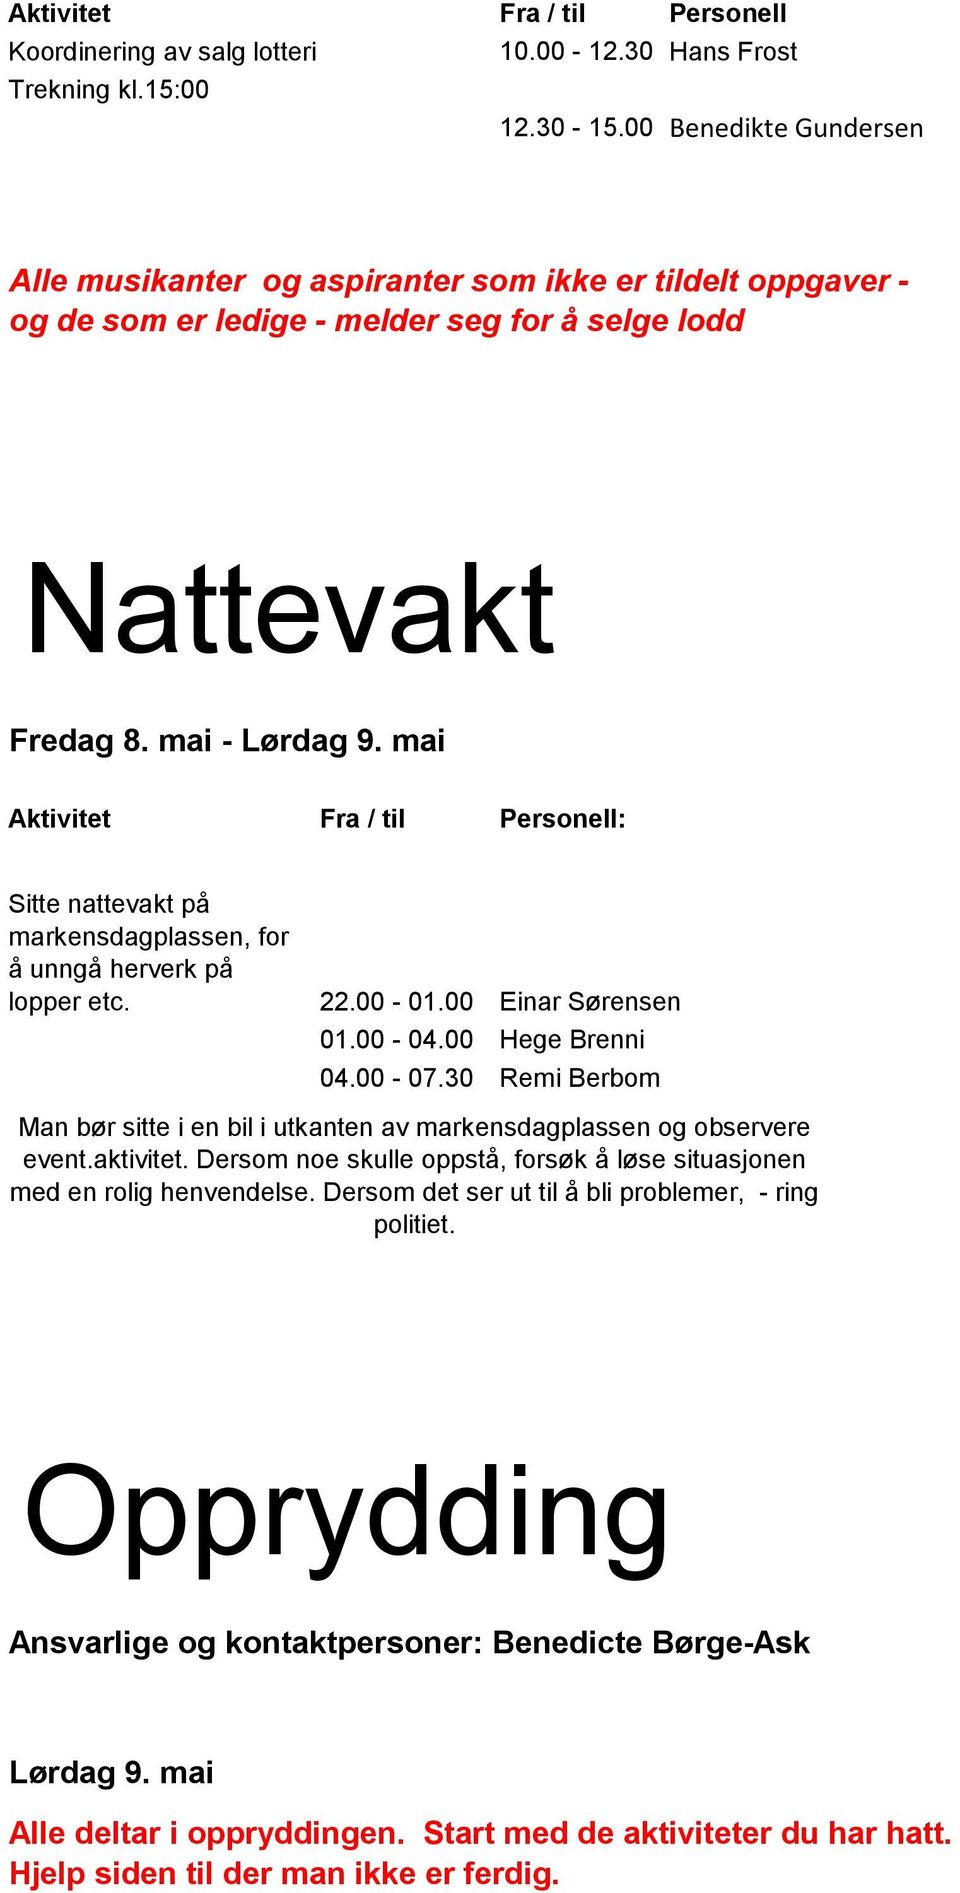 mai : Sitte nattevakt på markensdagplassen, for å unngå herverk på lopper etc. 22.00-01.00 Einar Sørensen 01.00-04.00 Hege Brenni 04.00-07.